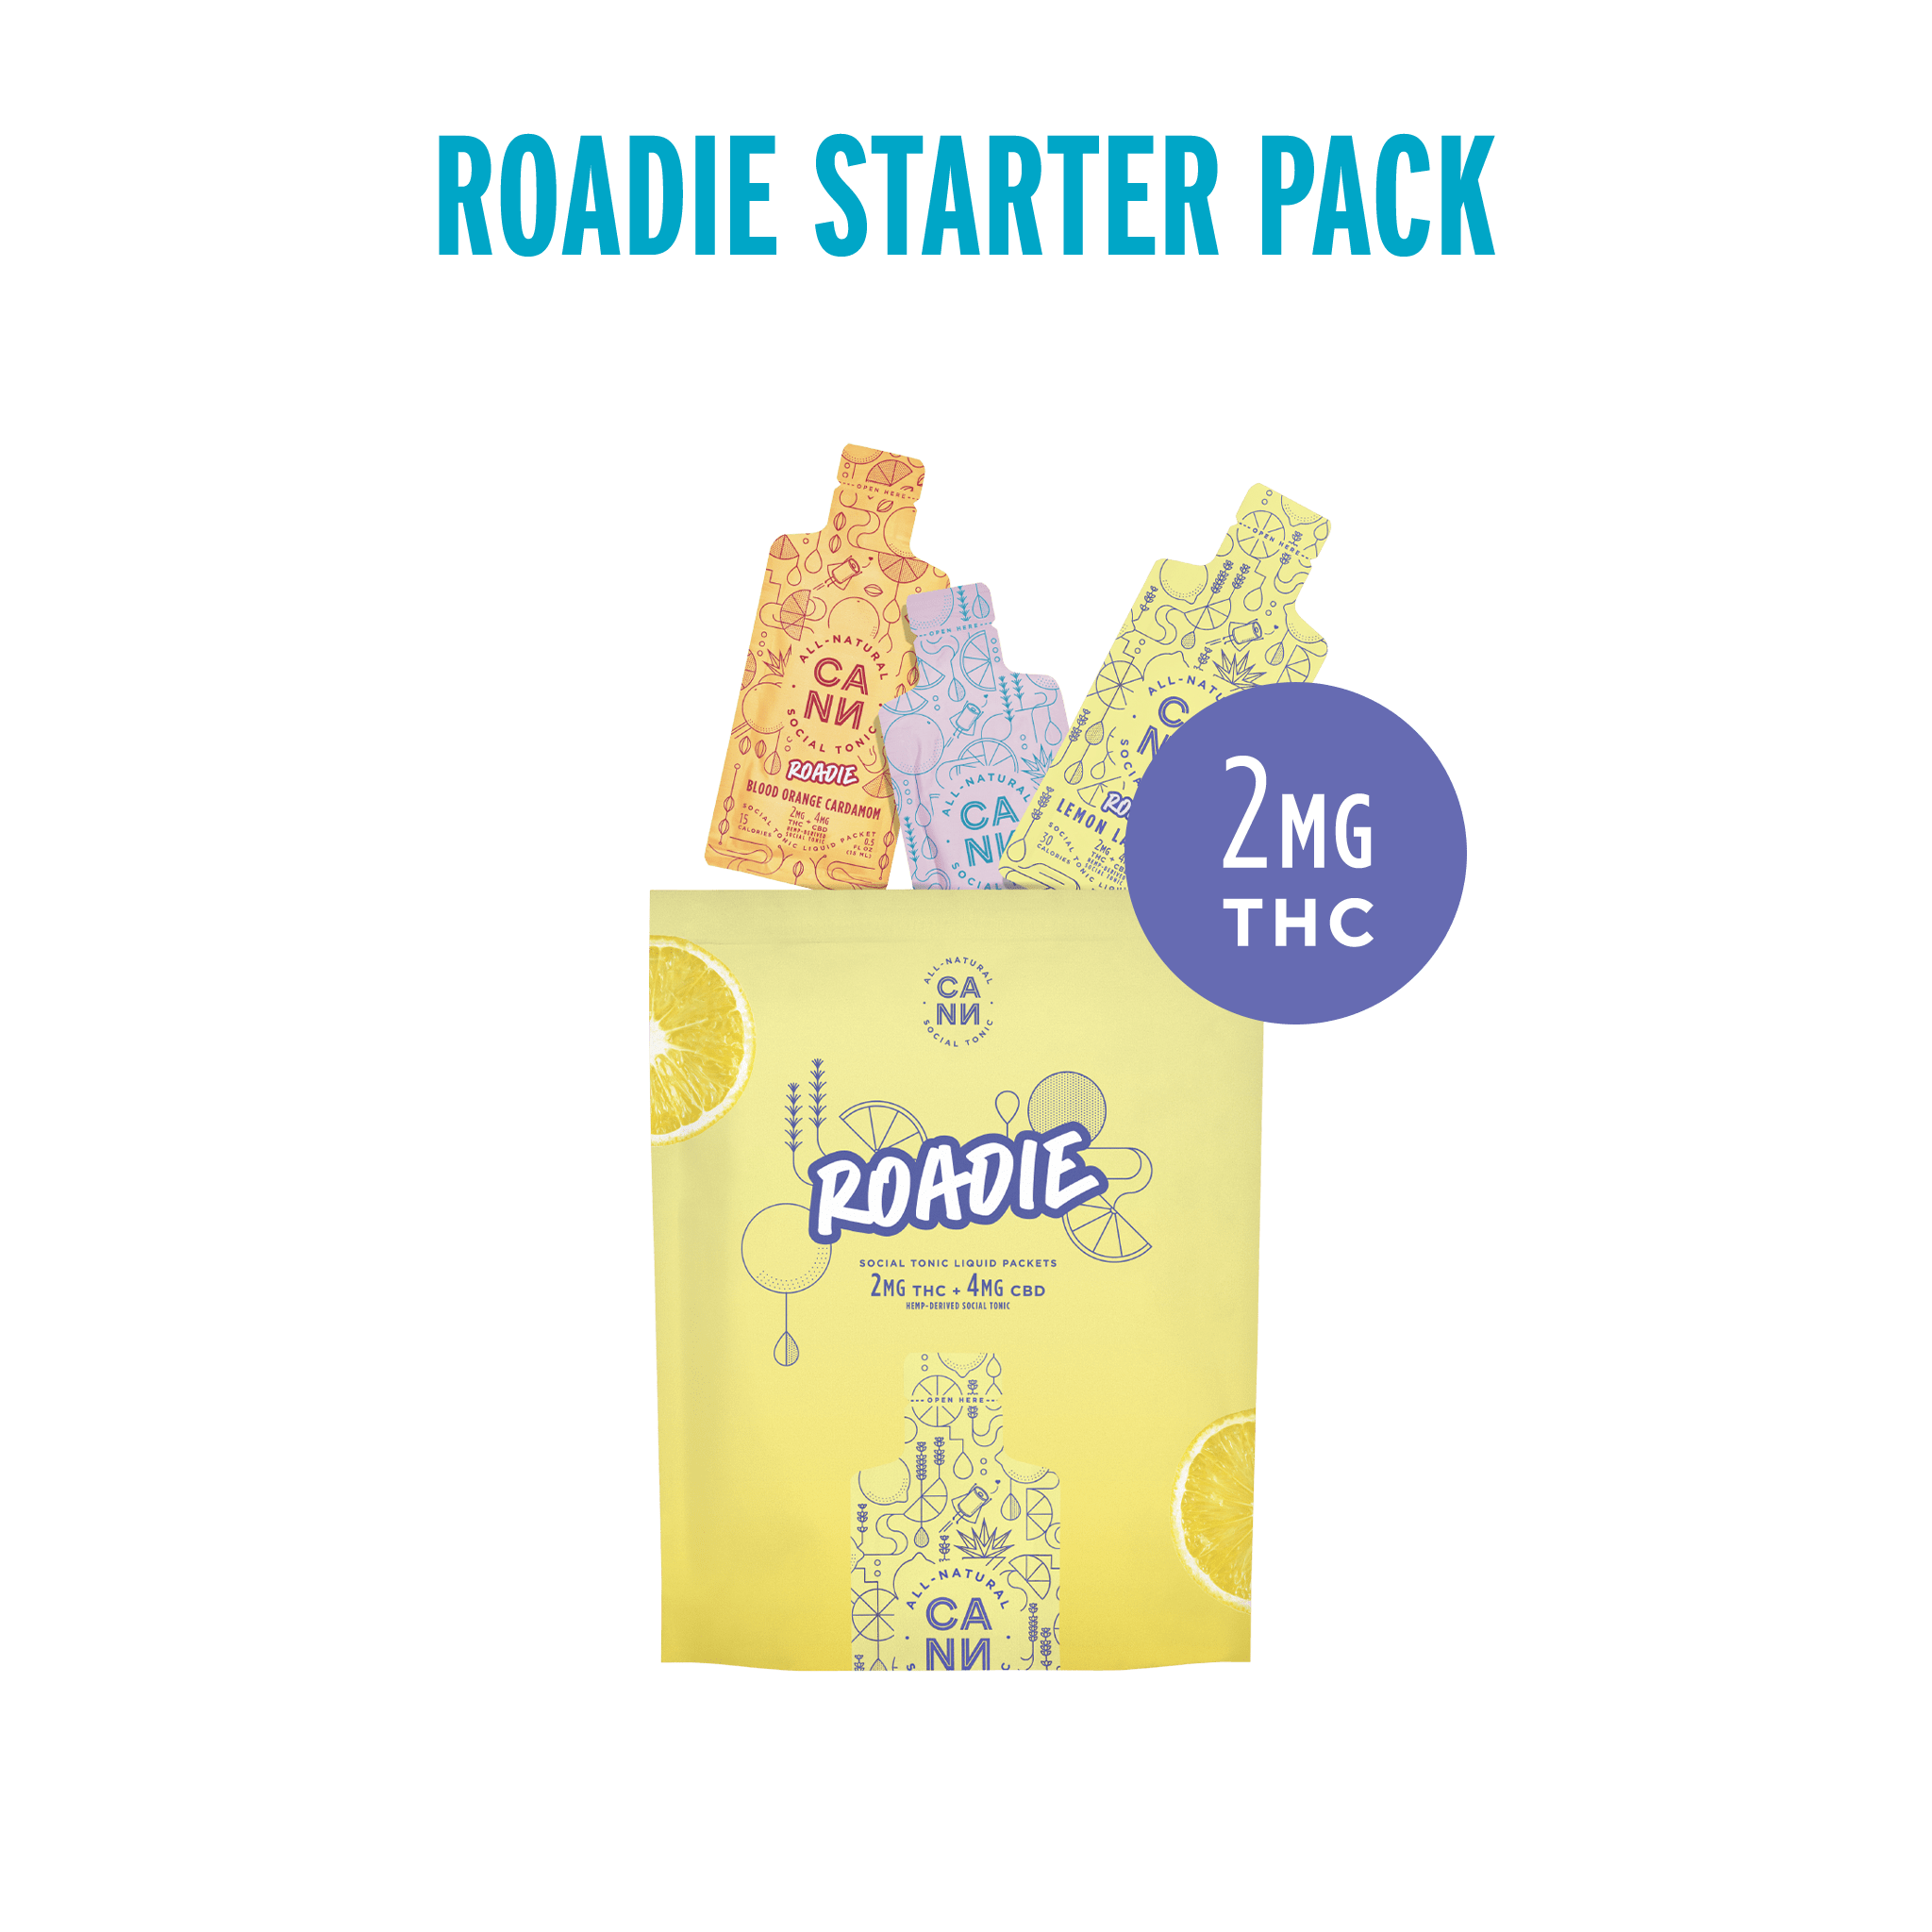 Roadie Starter Pack